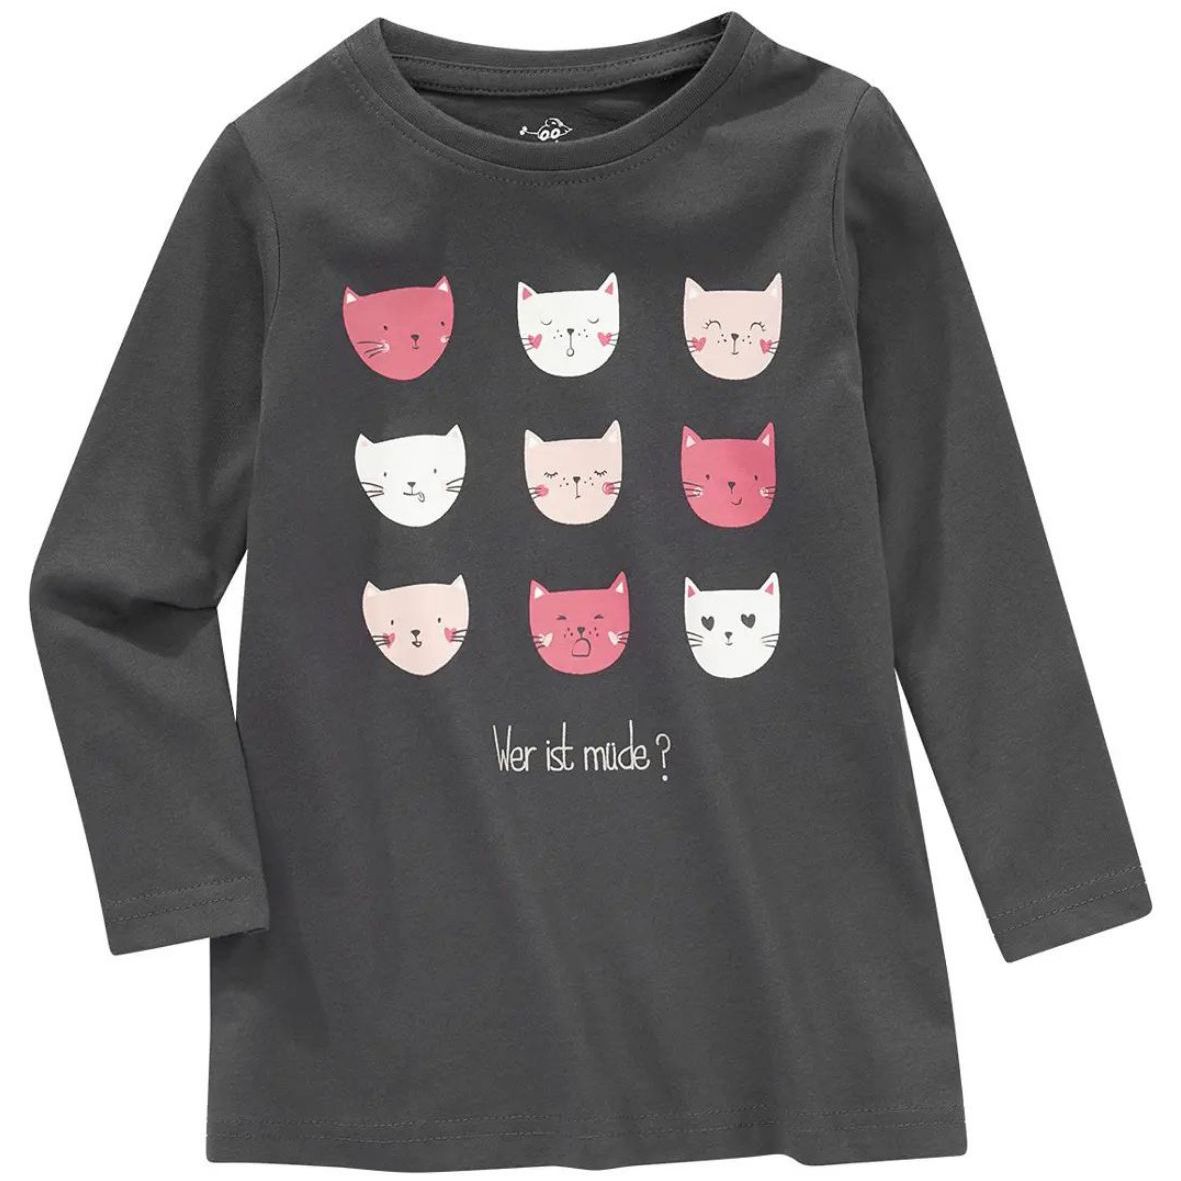 تی شرت آستین بلند دخترانه توپومینی مدل 12654 گربه ها